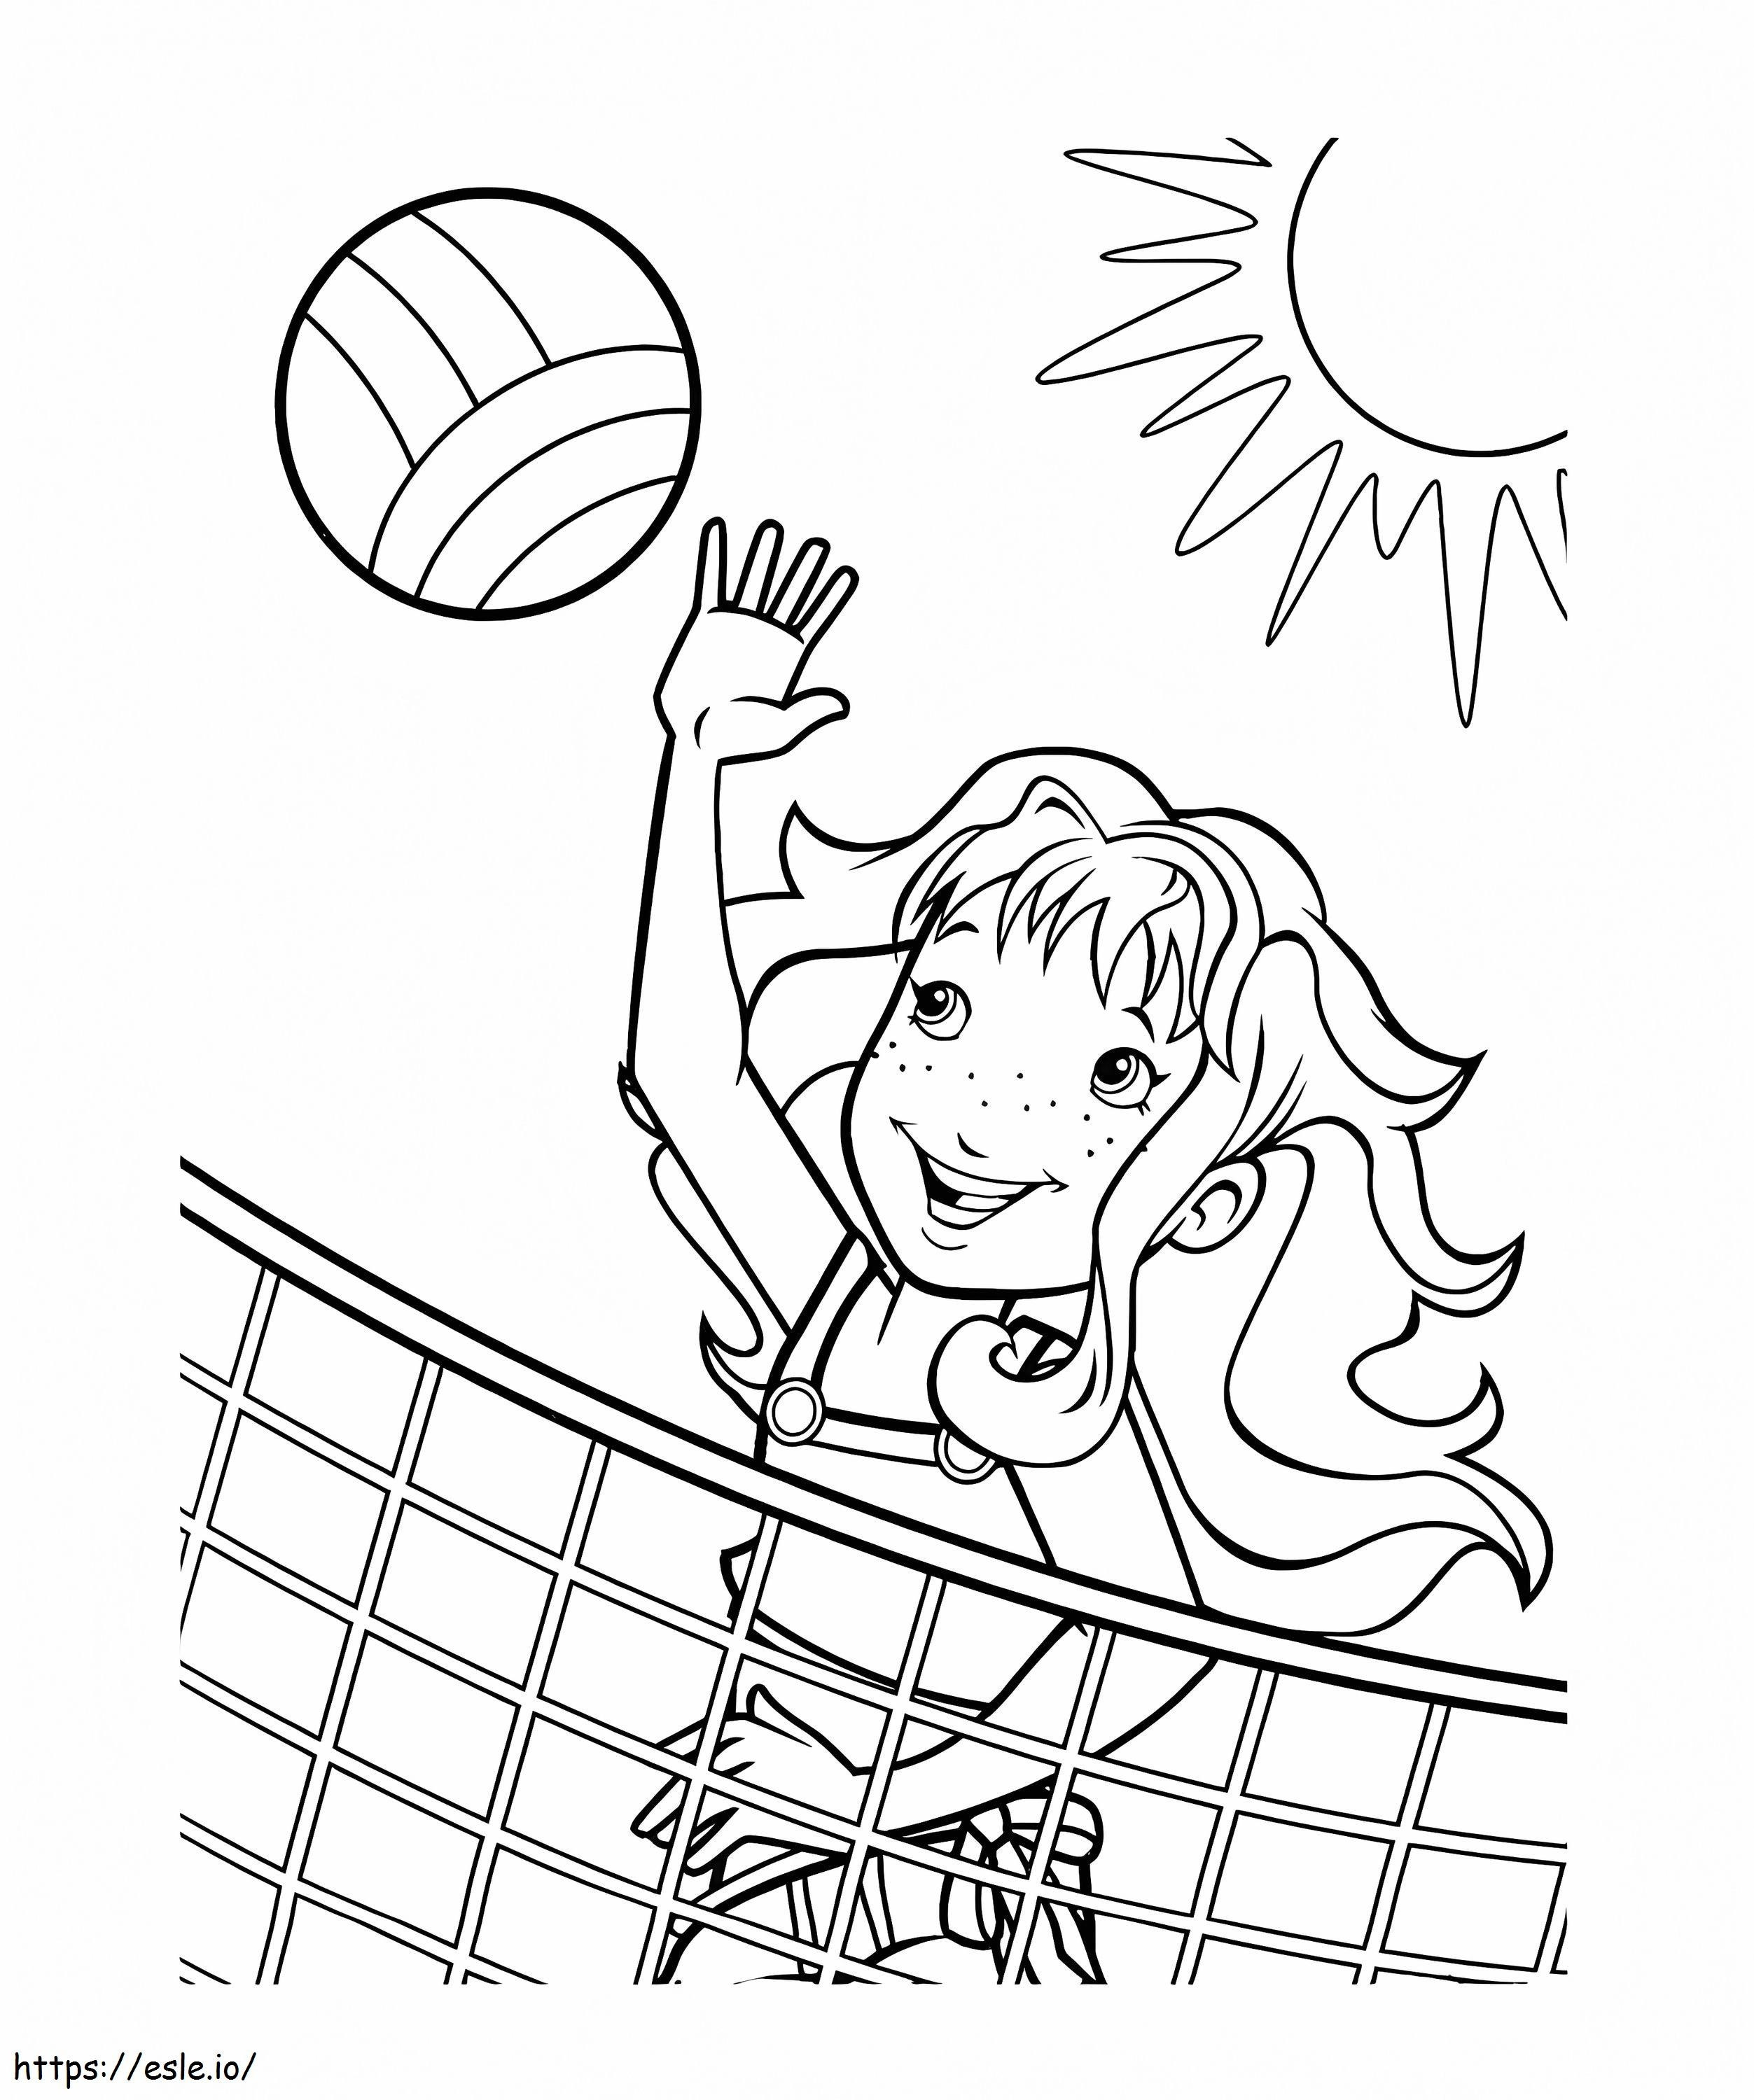 Ausmalbilder Mädchen spielen Volleyball ausmalbilder